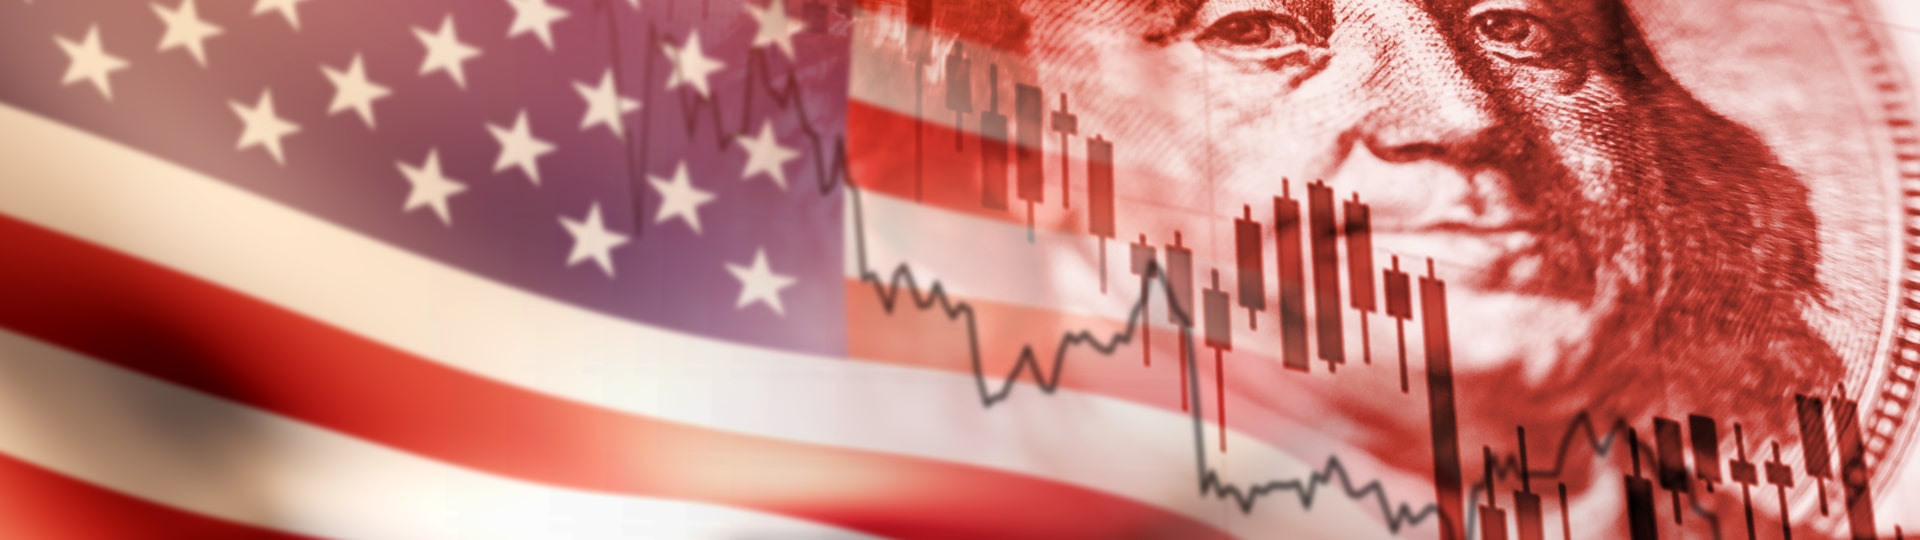 Americké akcie vykázaly třetí čtvrtletní pokles za sebou